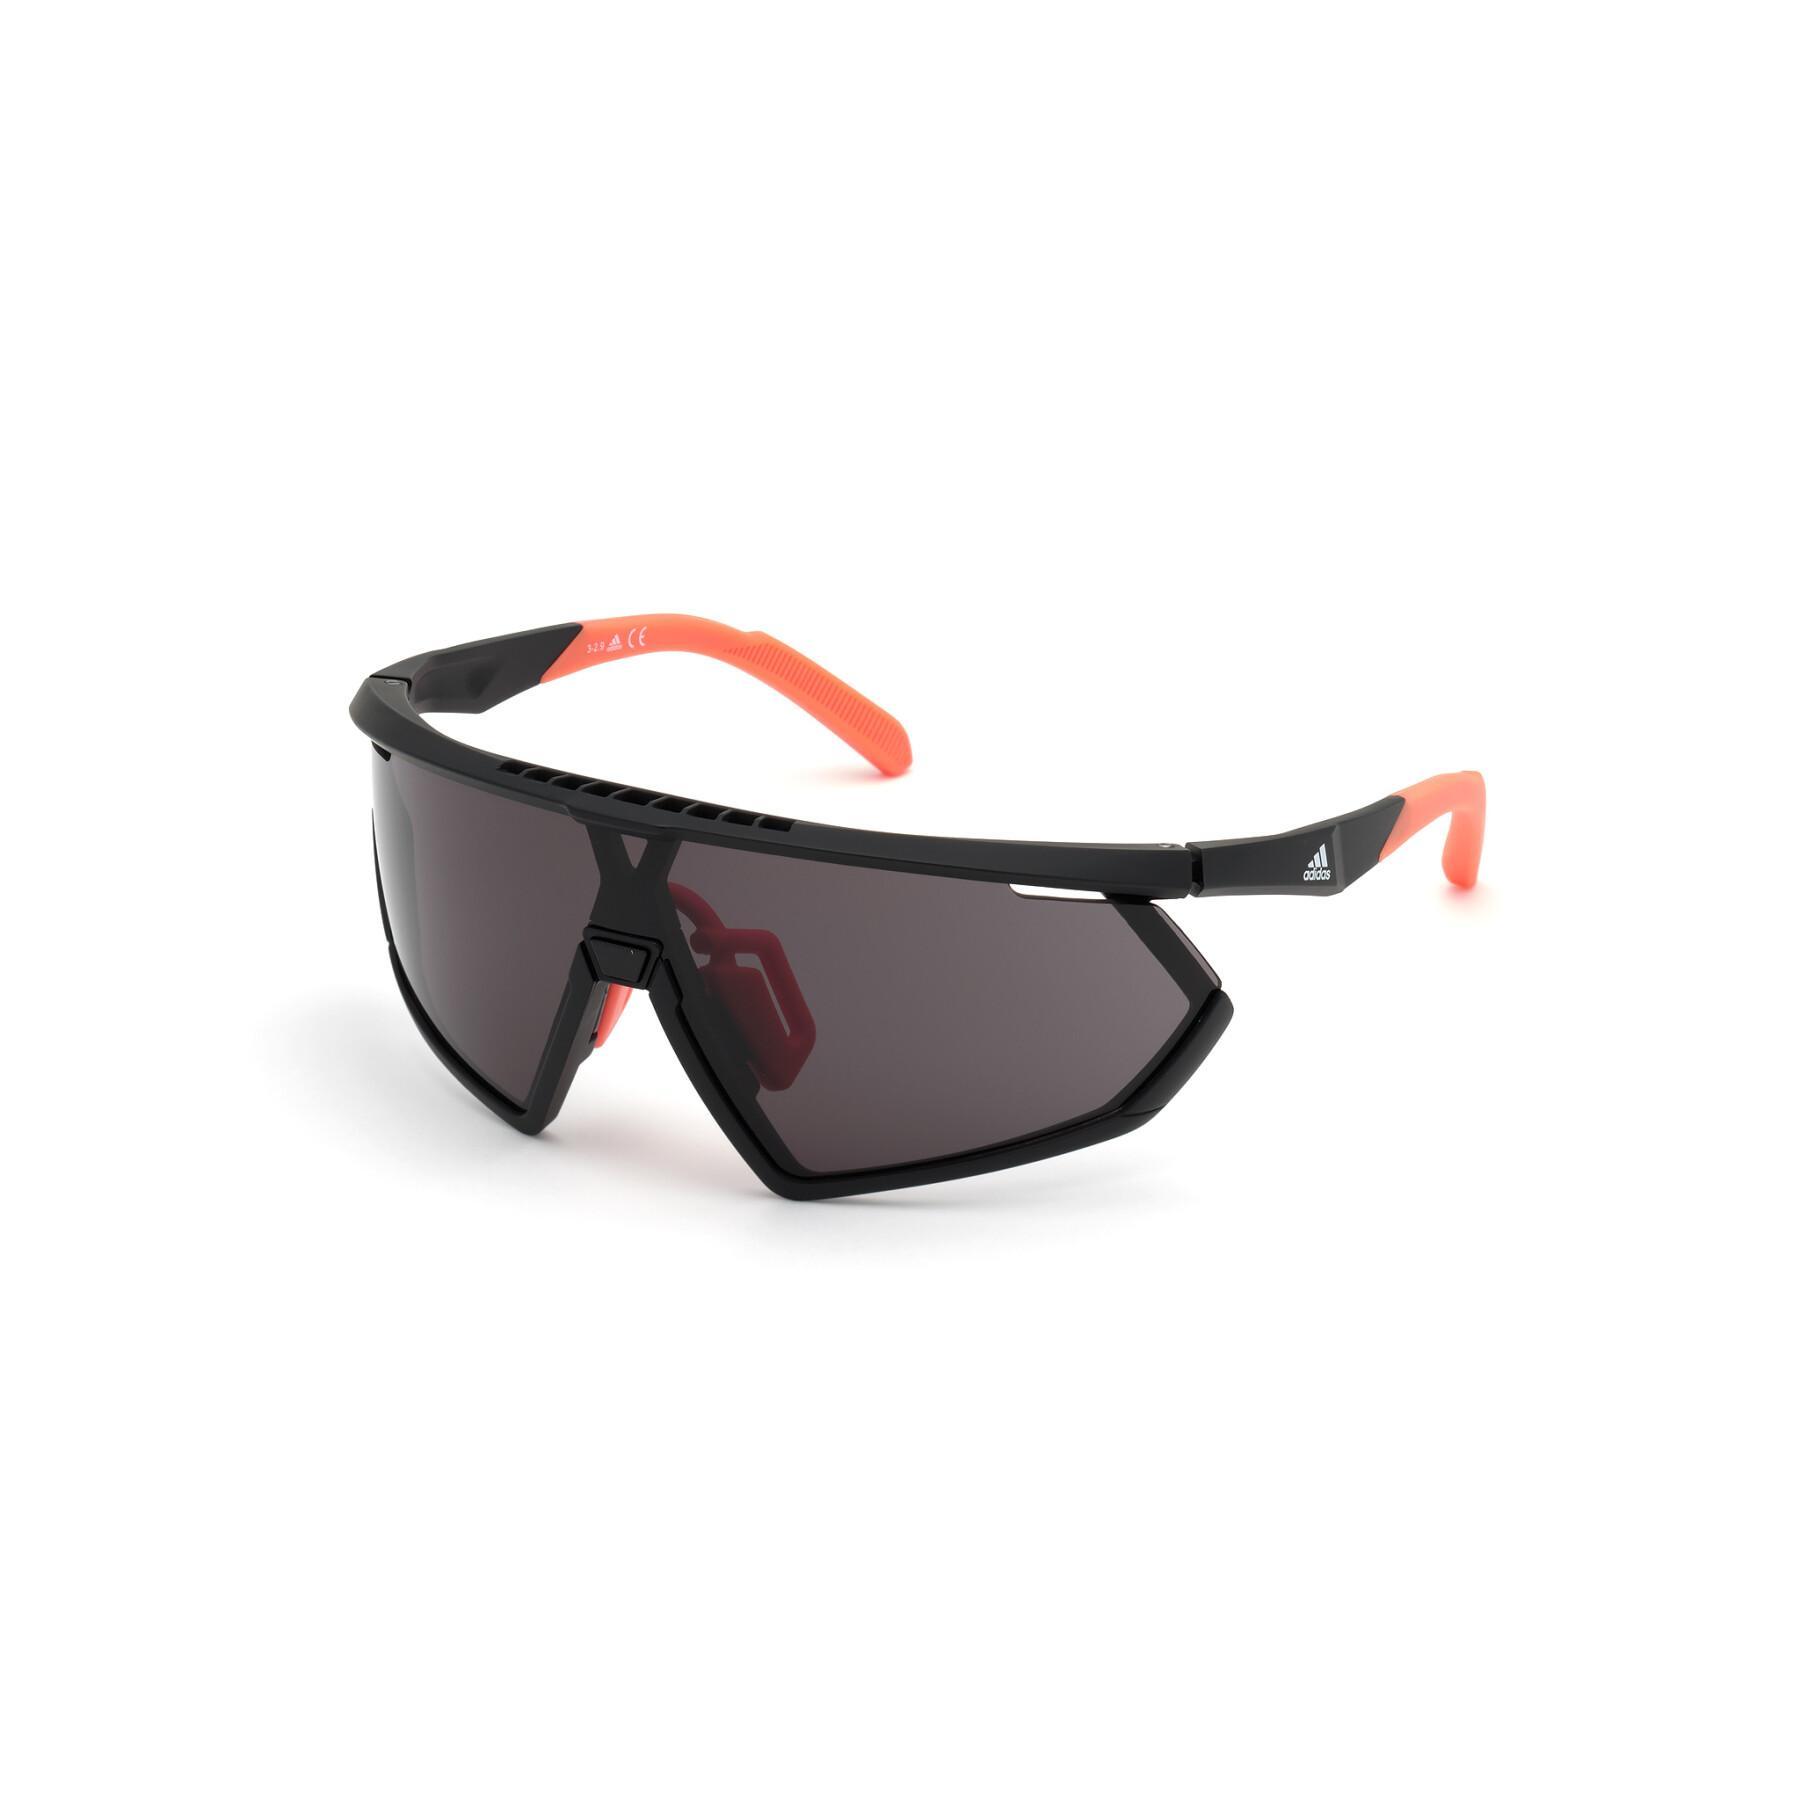 Gafas de sol Adidas - bisel - Accesorios Running